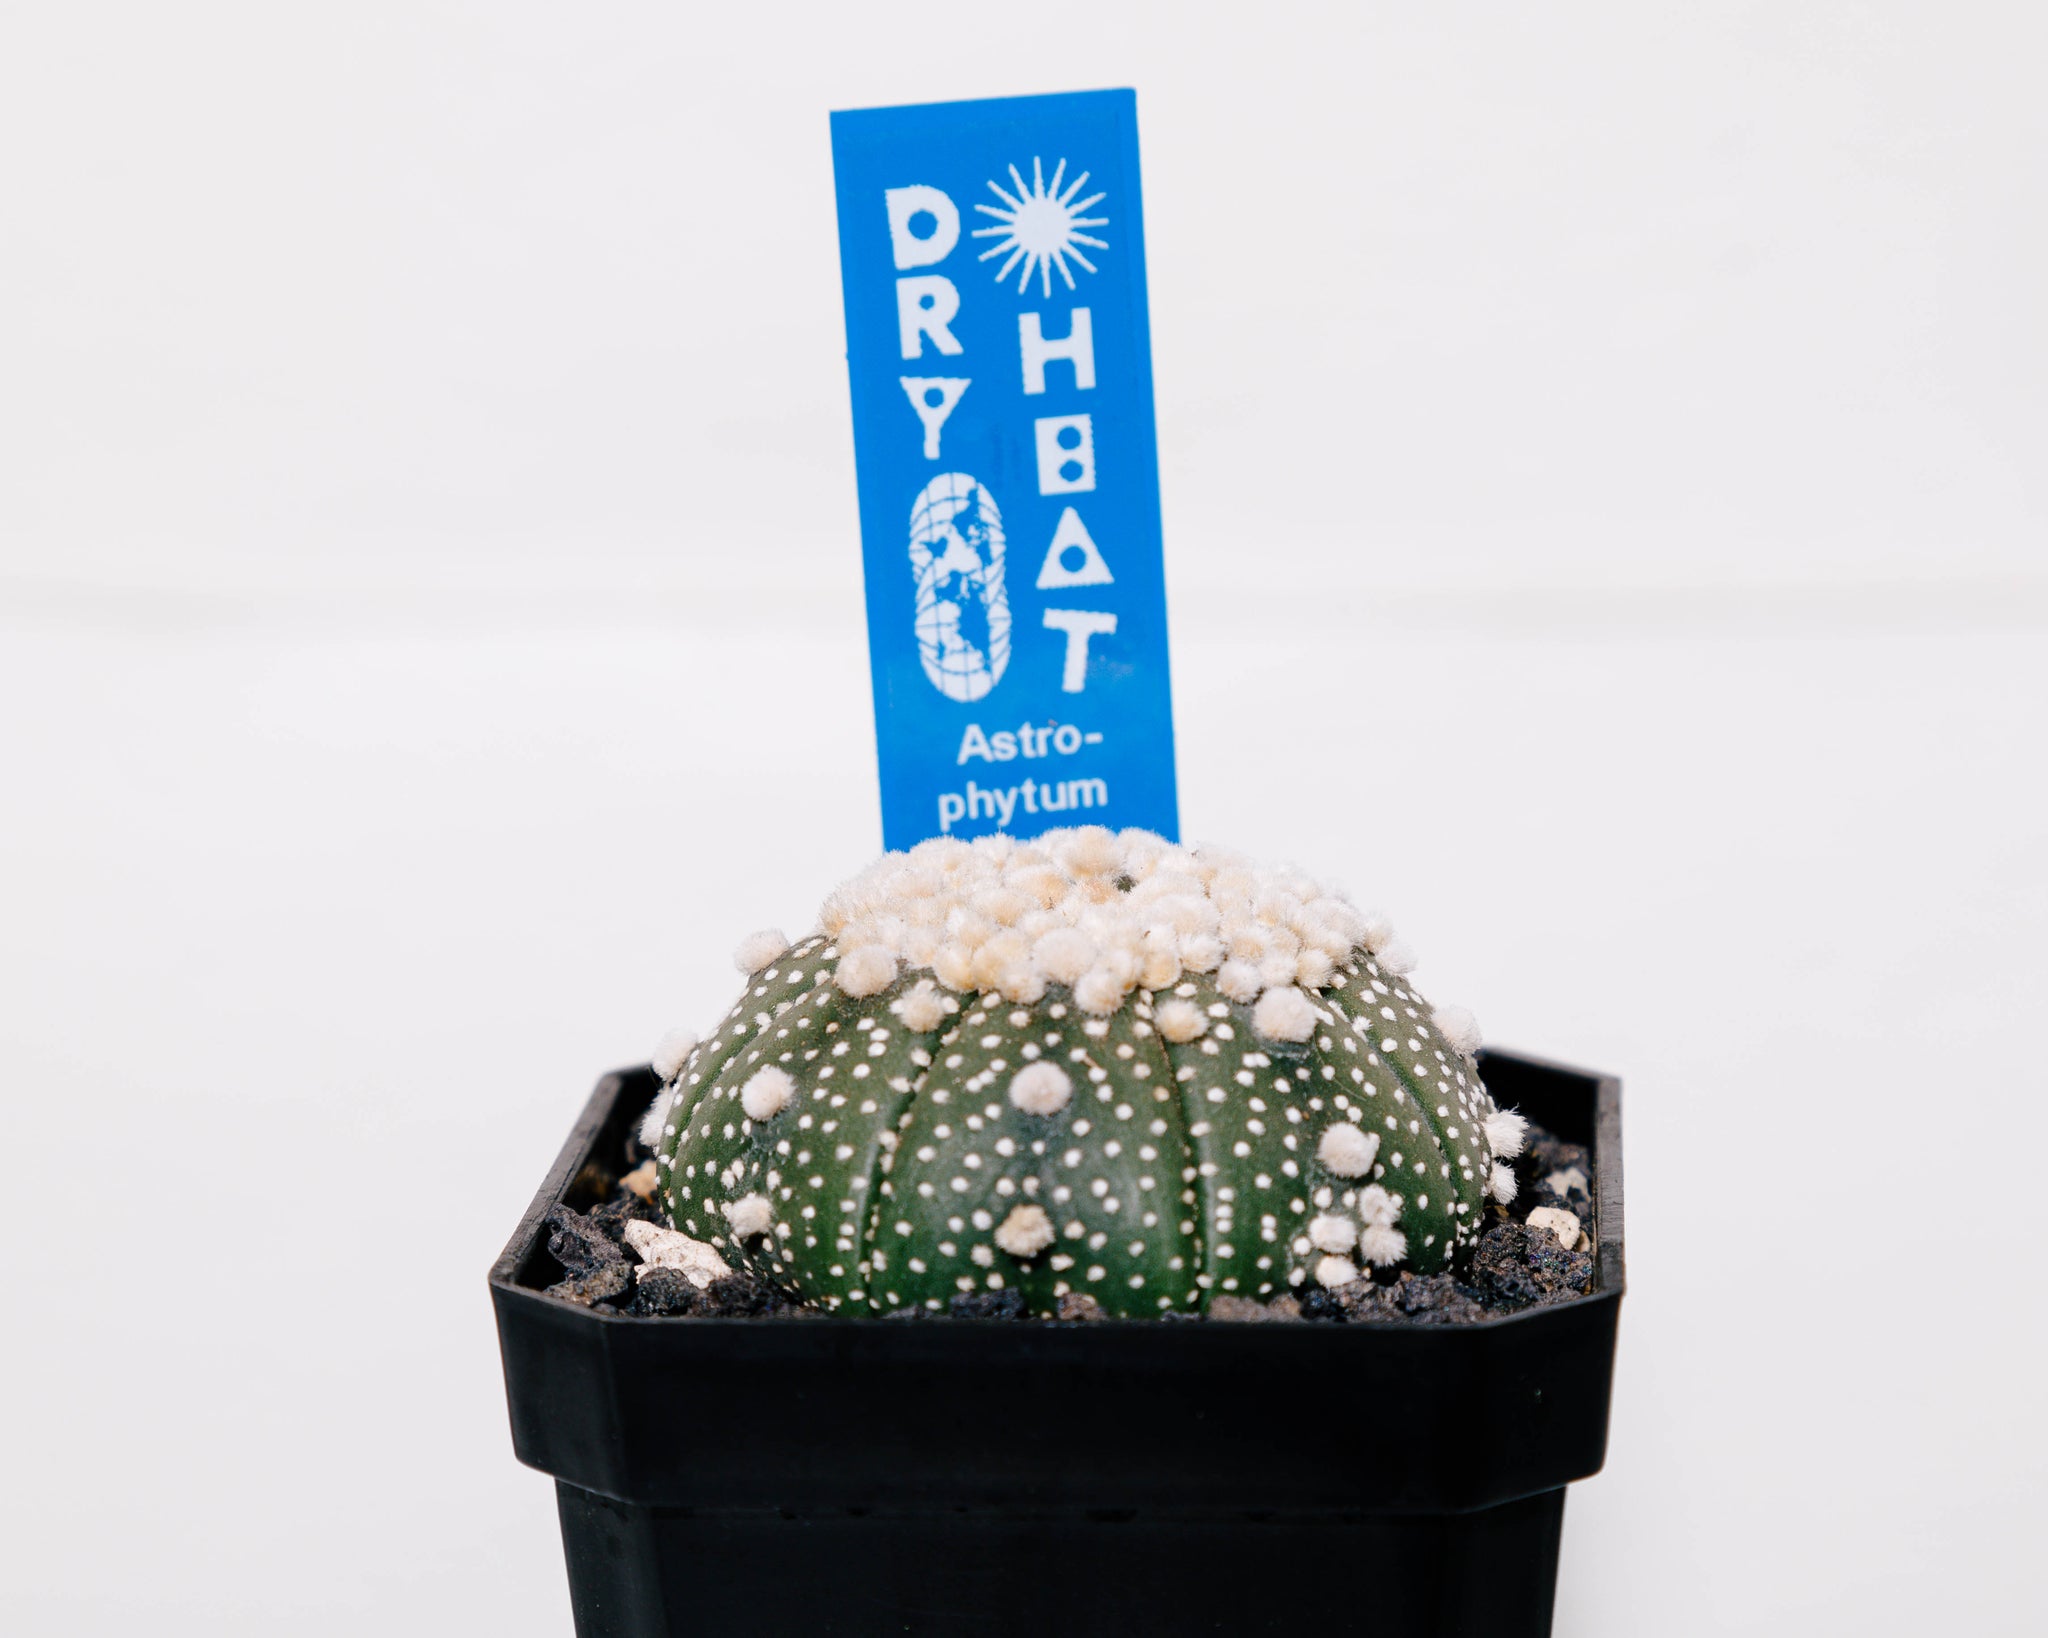 Astrophytum asterias cv. Hanazono